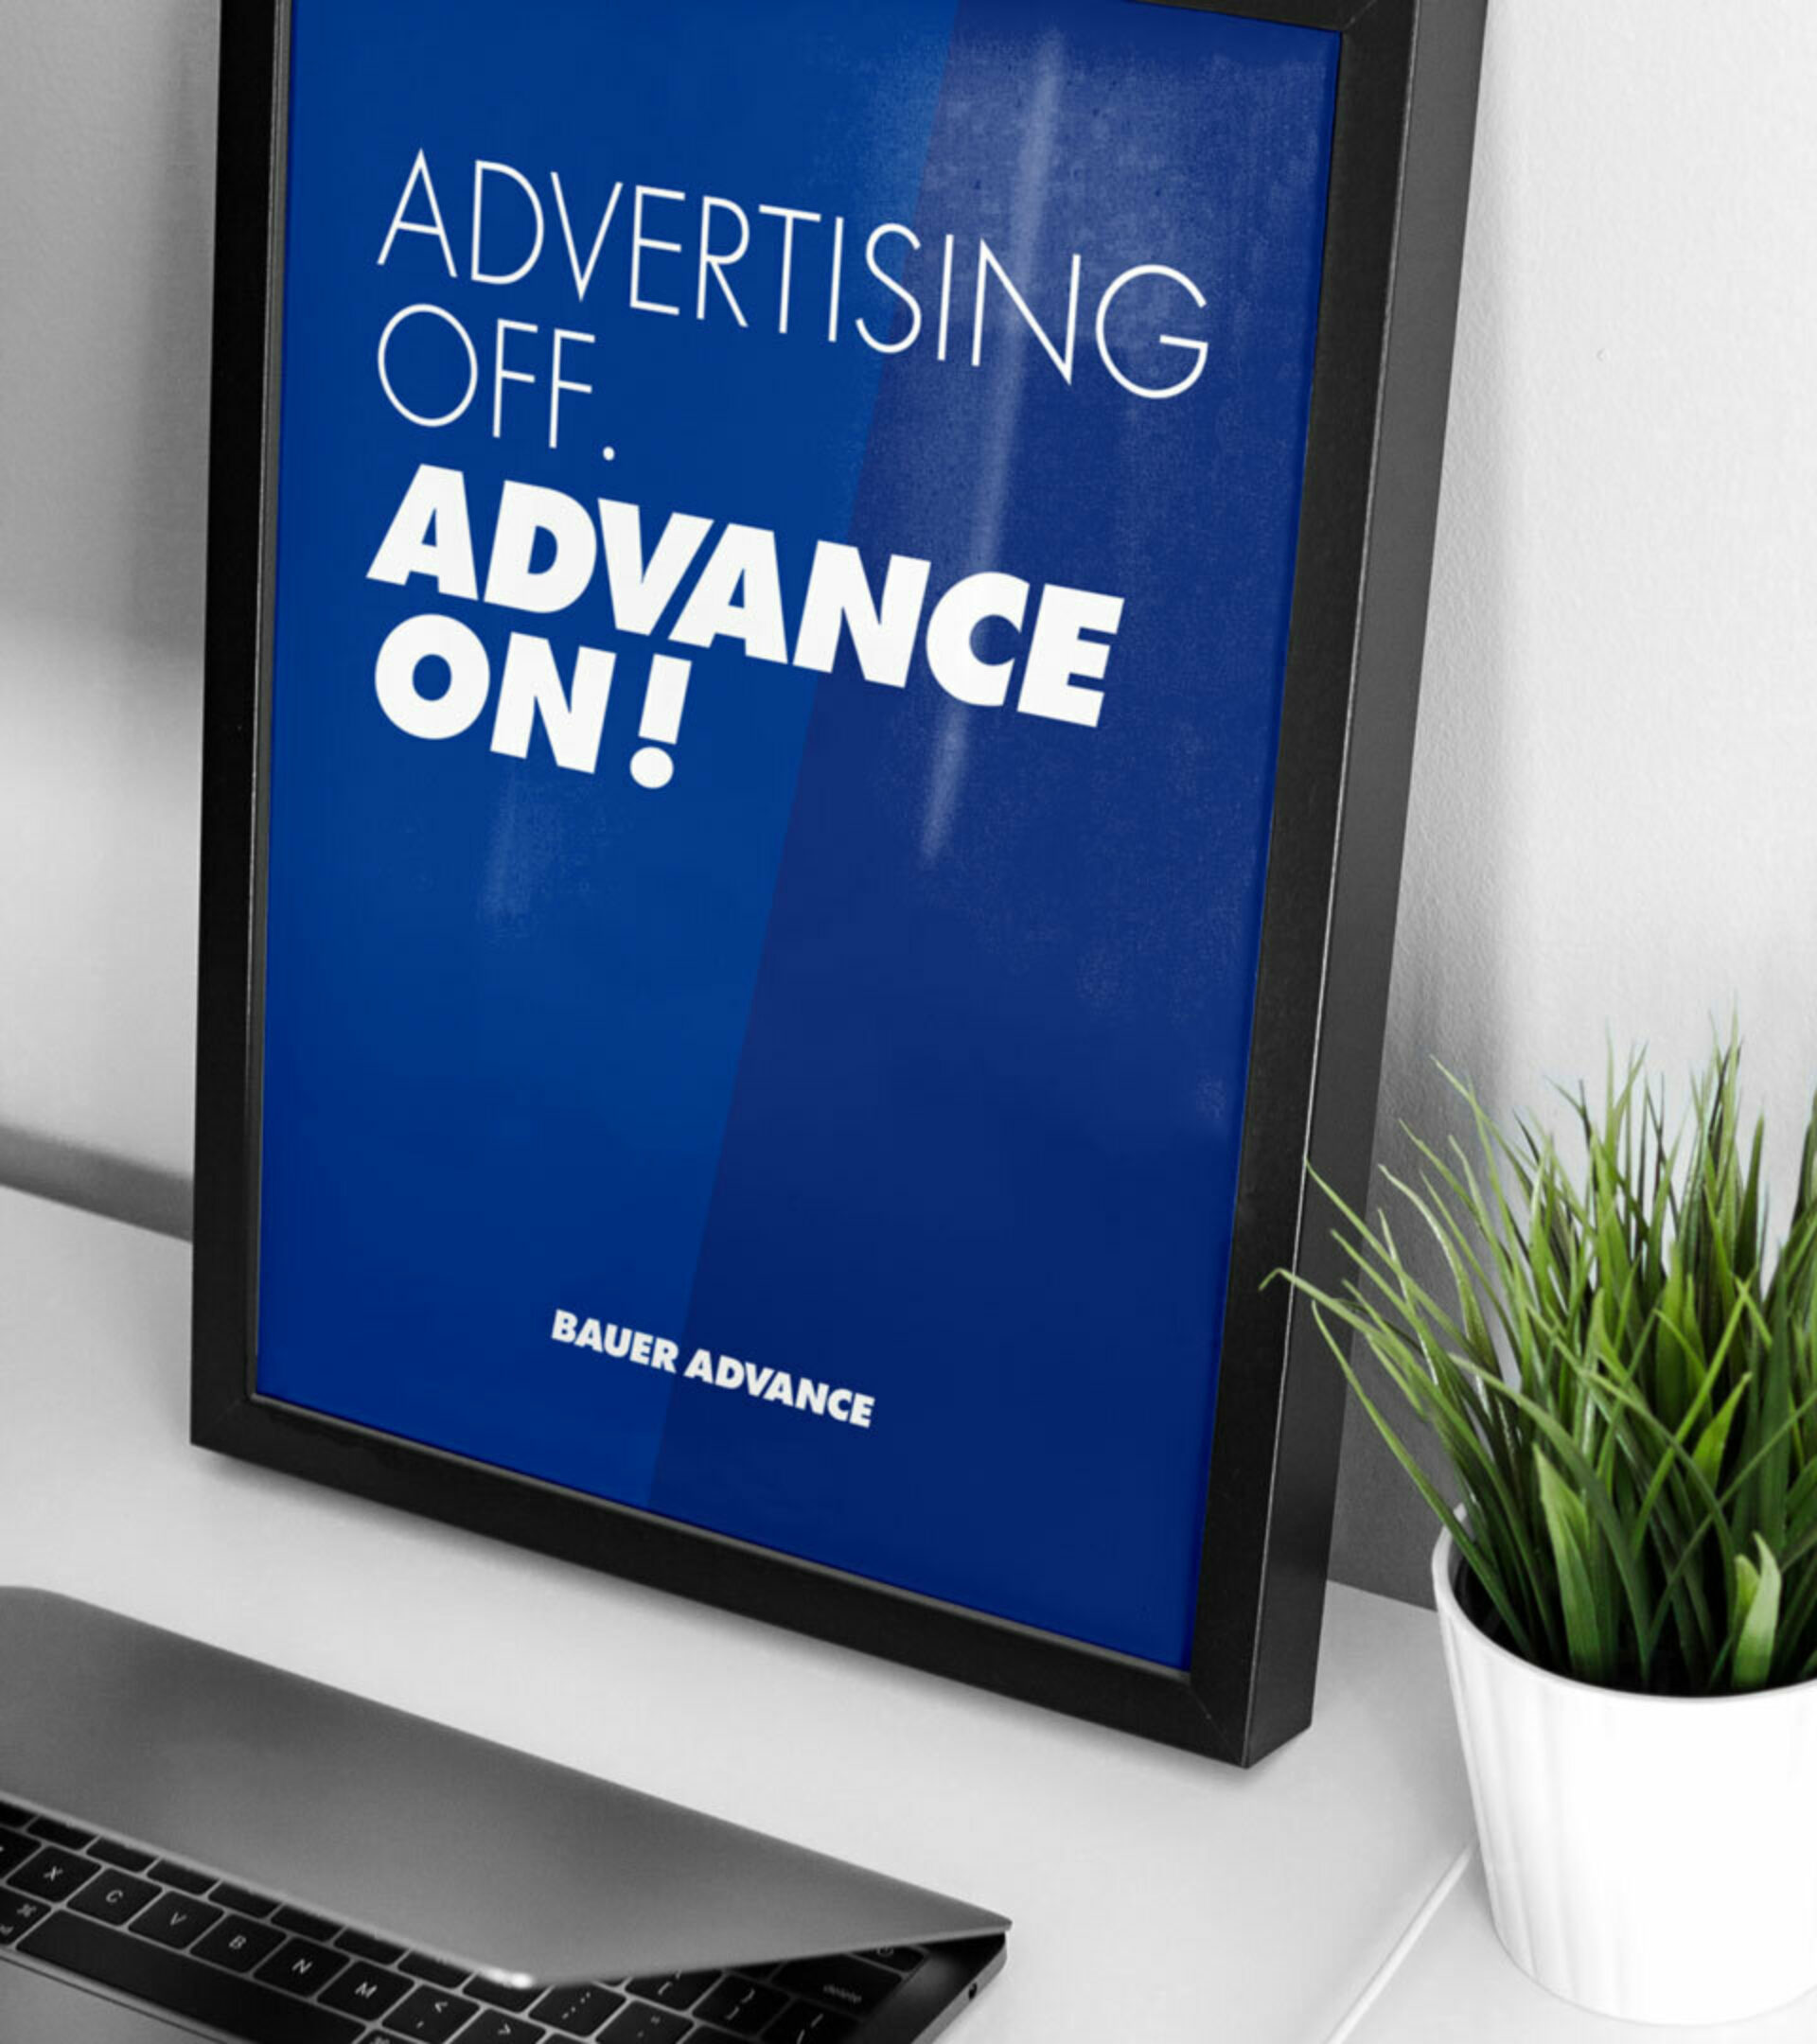 Ein dunkelblaues Poster in einem Bilderrahmen lehnt an der Wand mit weißem Text: Advertising off. Advance on!